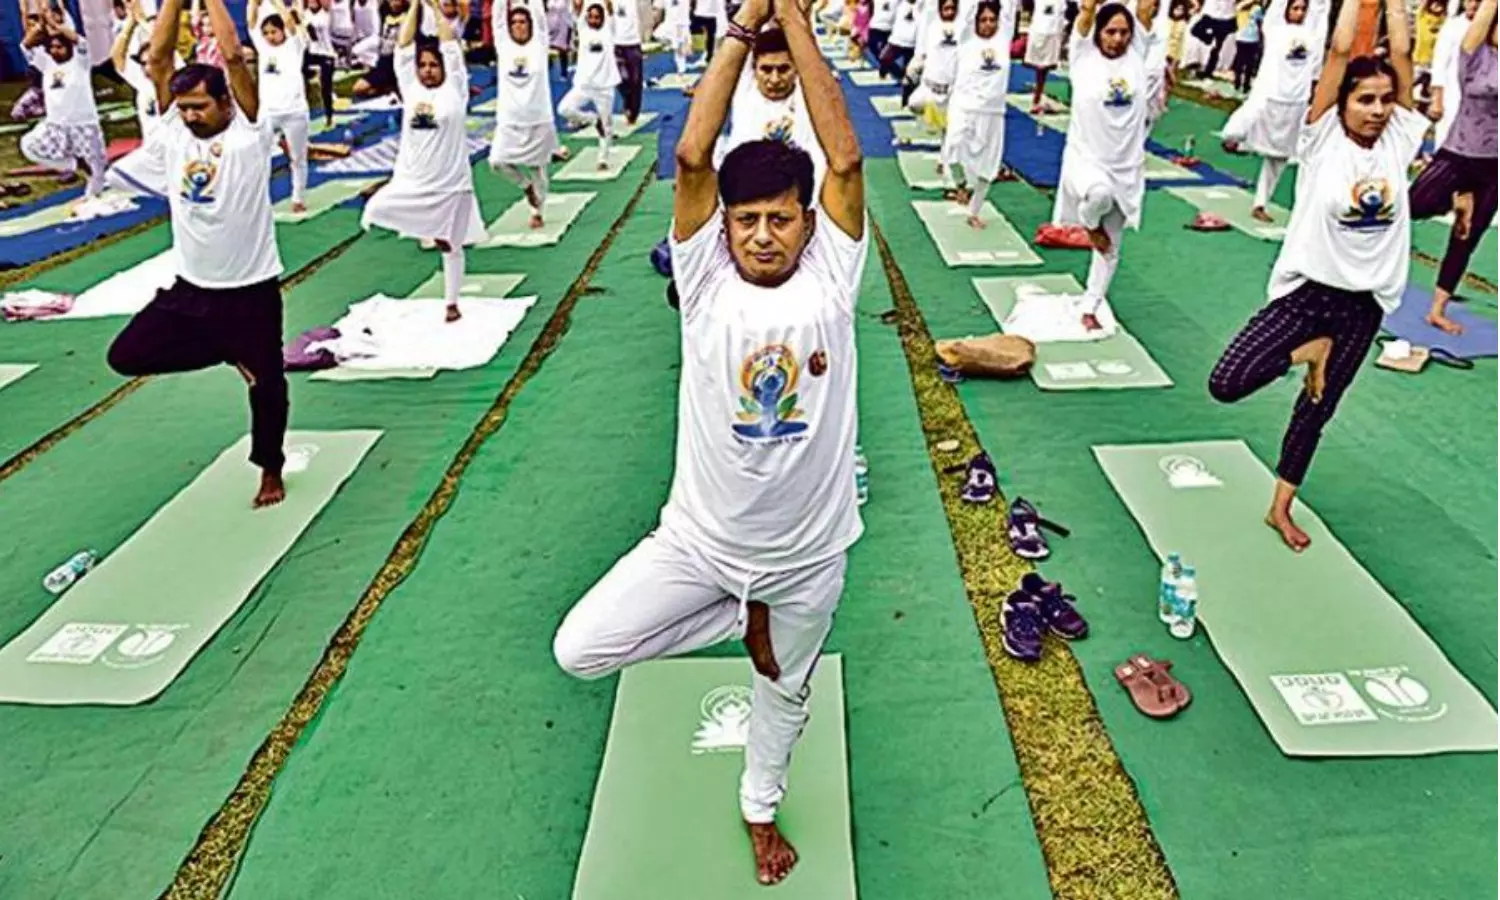 Yoga to become part of Asian Games: अब योगा को एशियाई खेलों में प्रतिस्पर्धी खेल के रूप में शामिल करने की तैयारी